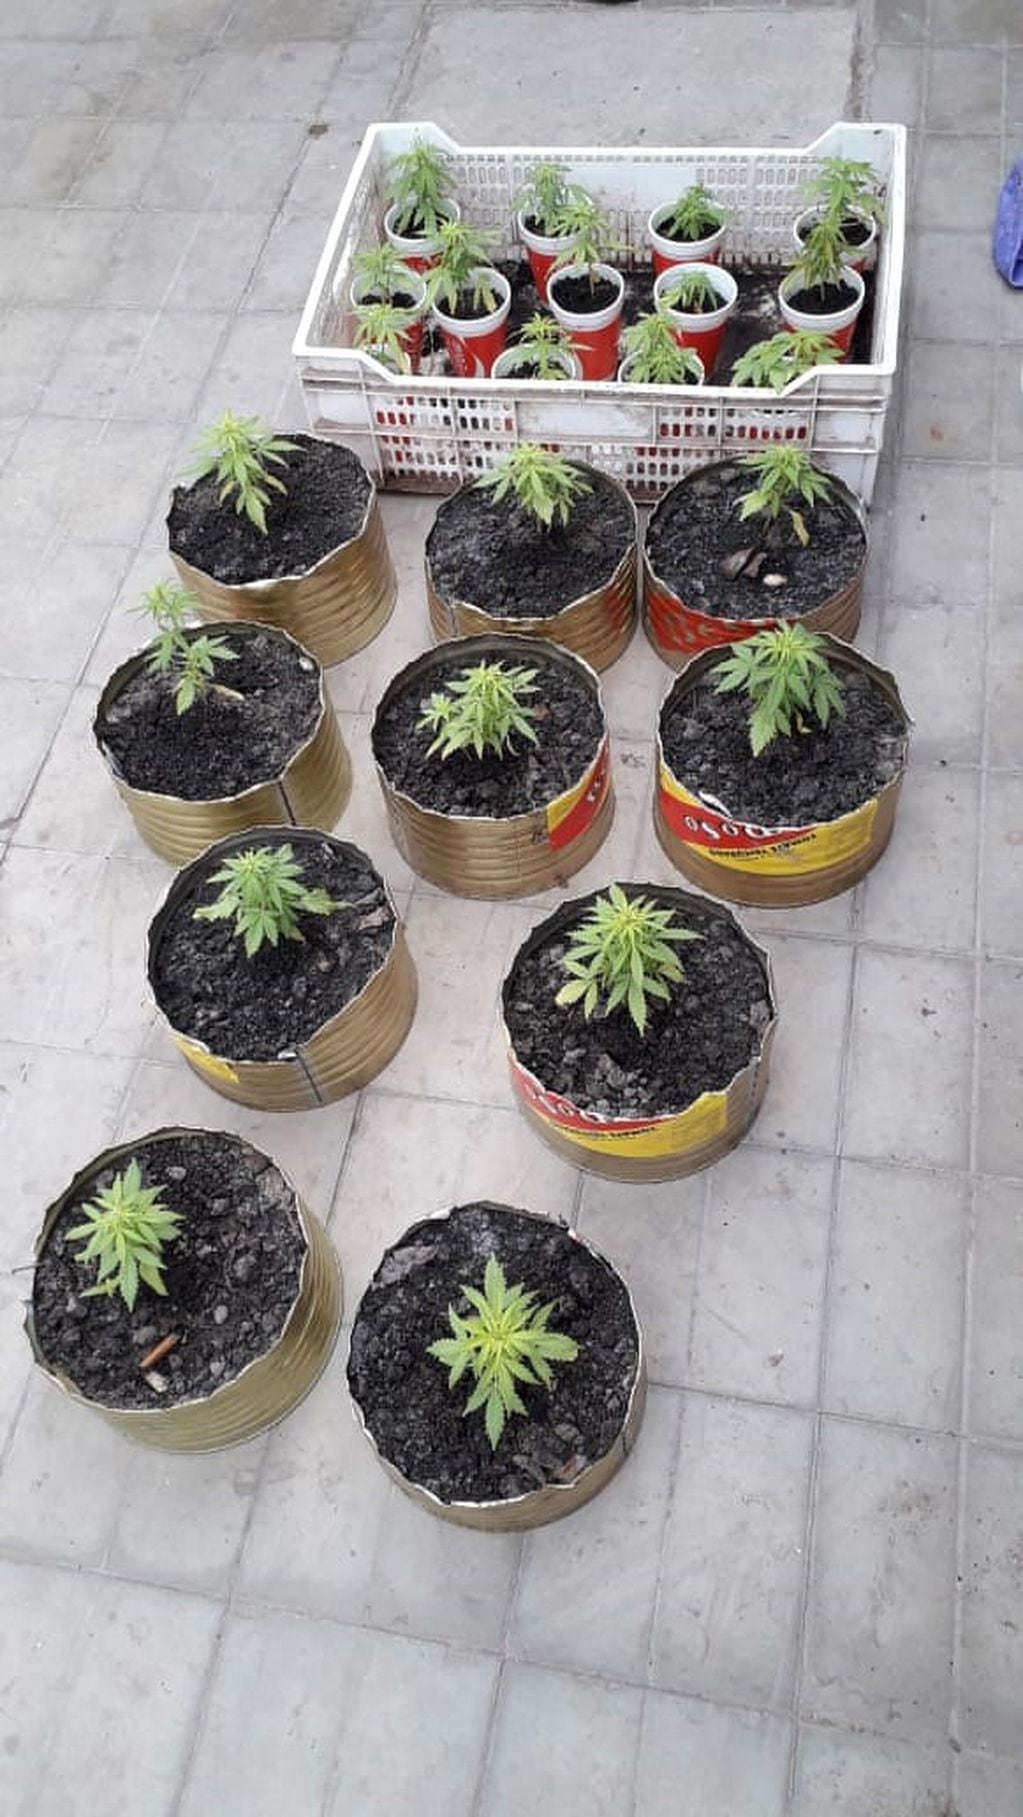 Plantas de marihuana en un viviero ilegal.